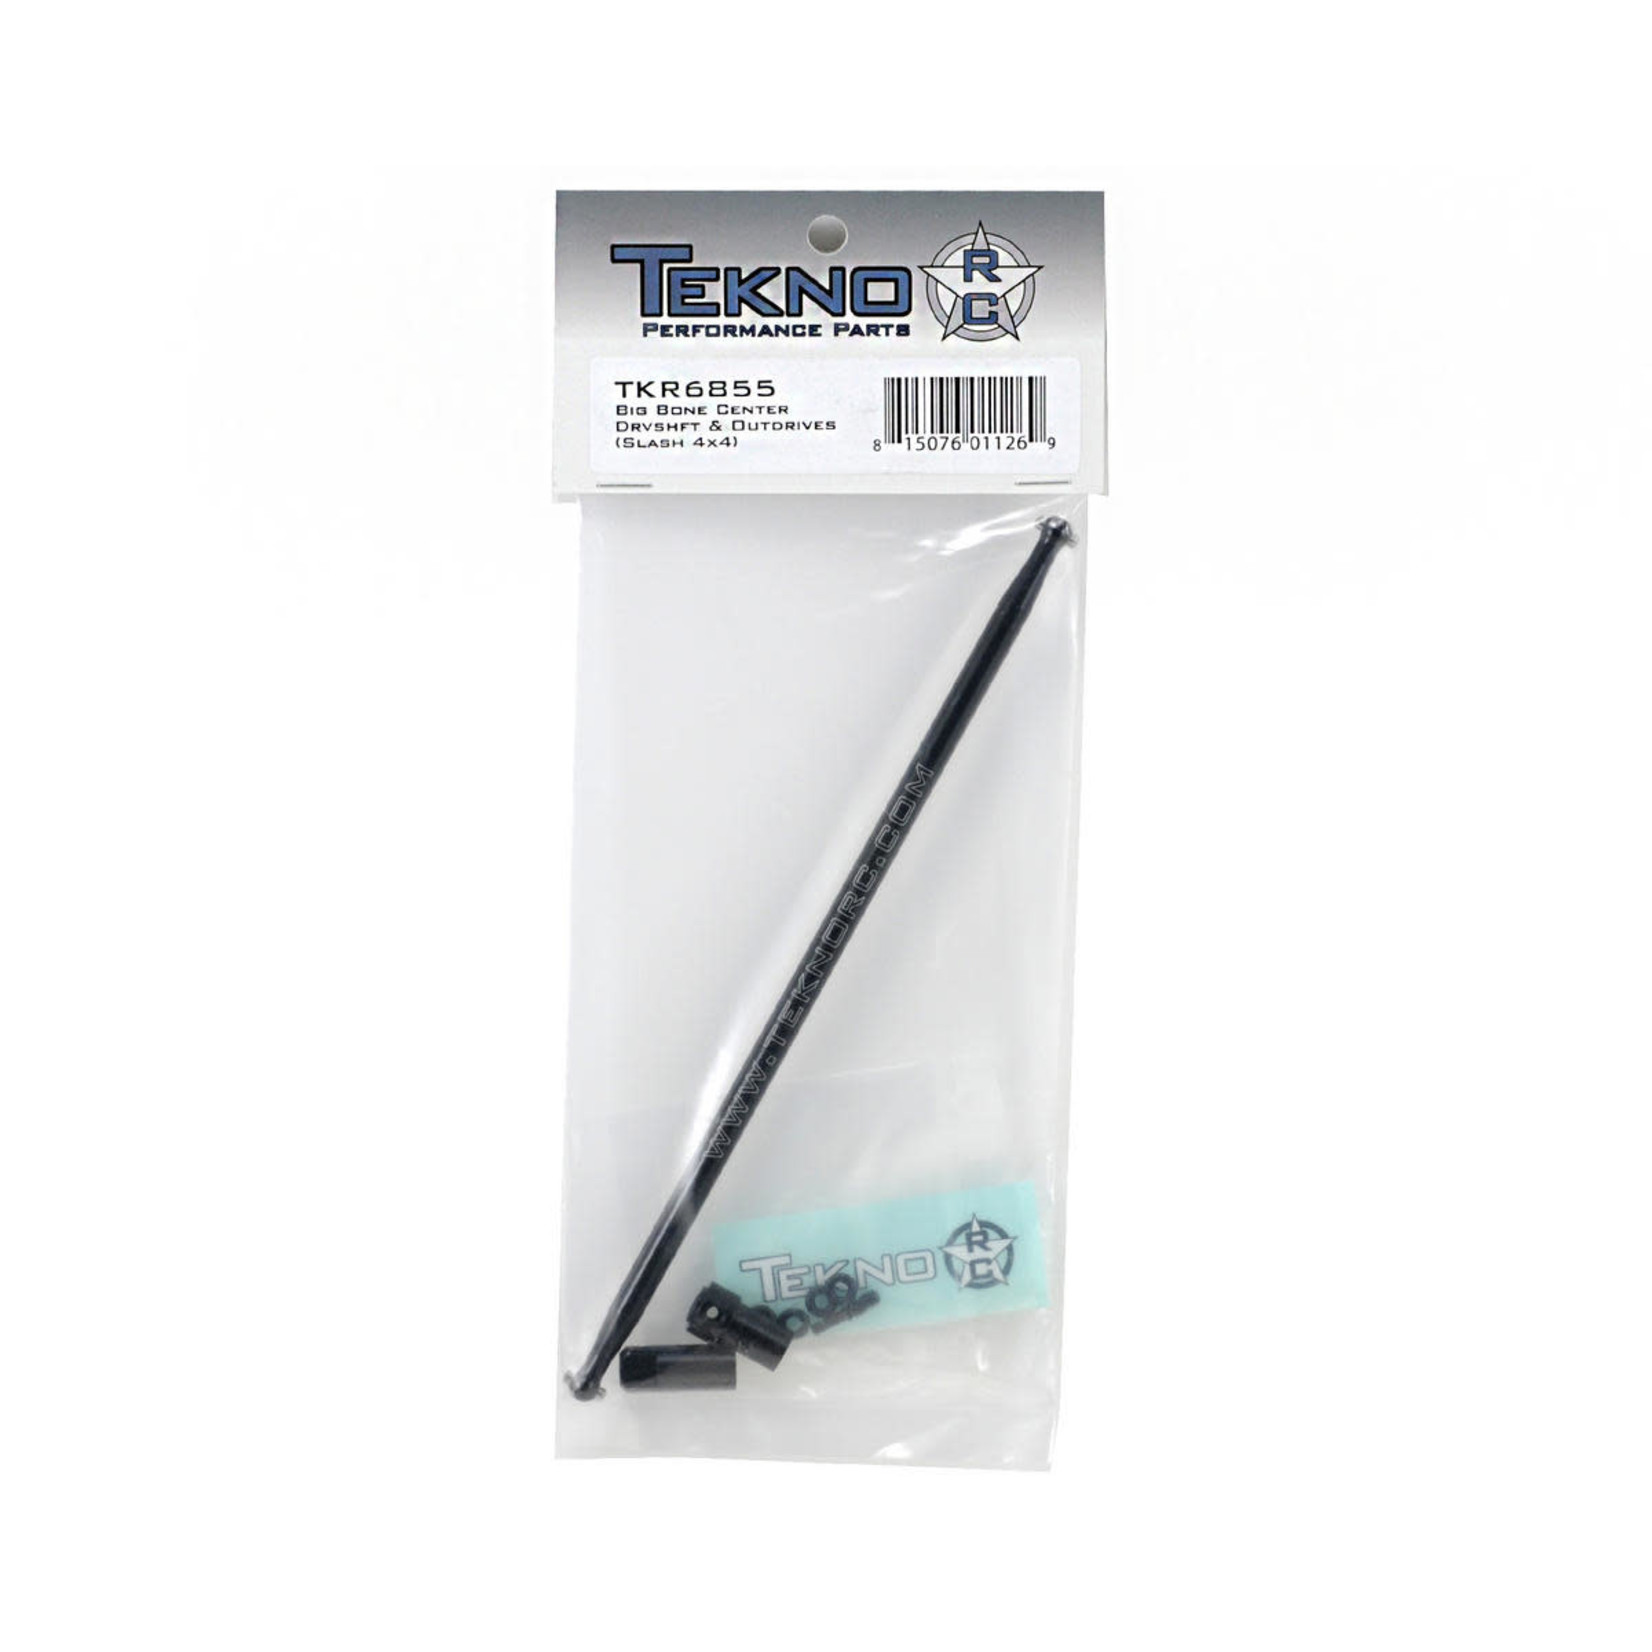 Tekno RC Tekno RC Big Bone Center Driveshaft & Outdrive Kit (Slash) #TKR6855